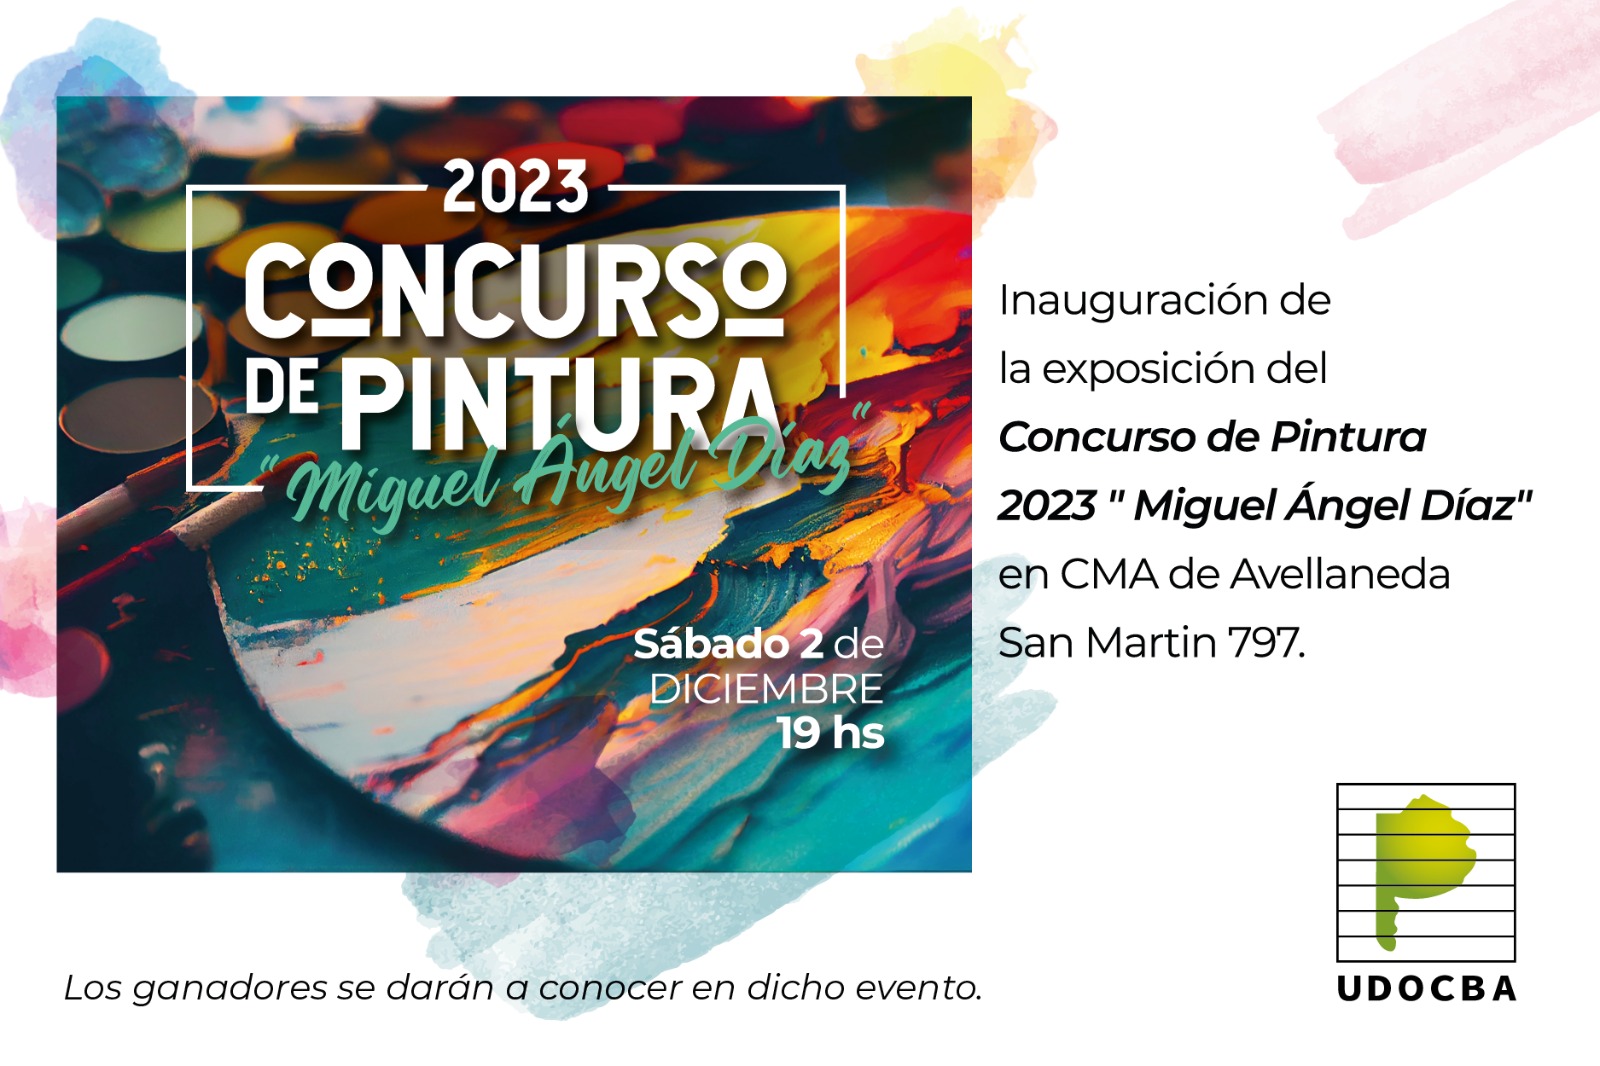 UDOCBA Concurso de pintura 2023 - MIGUEL ANGEL DÍAZ-0